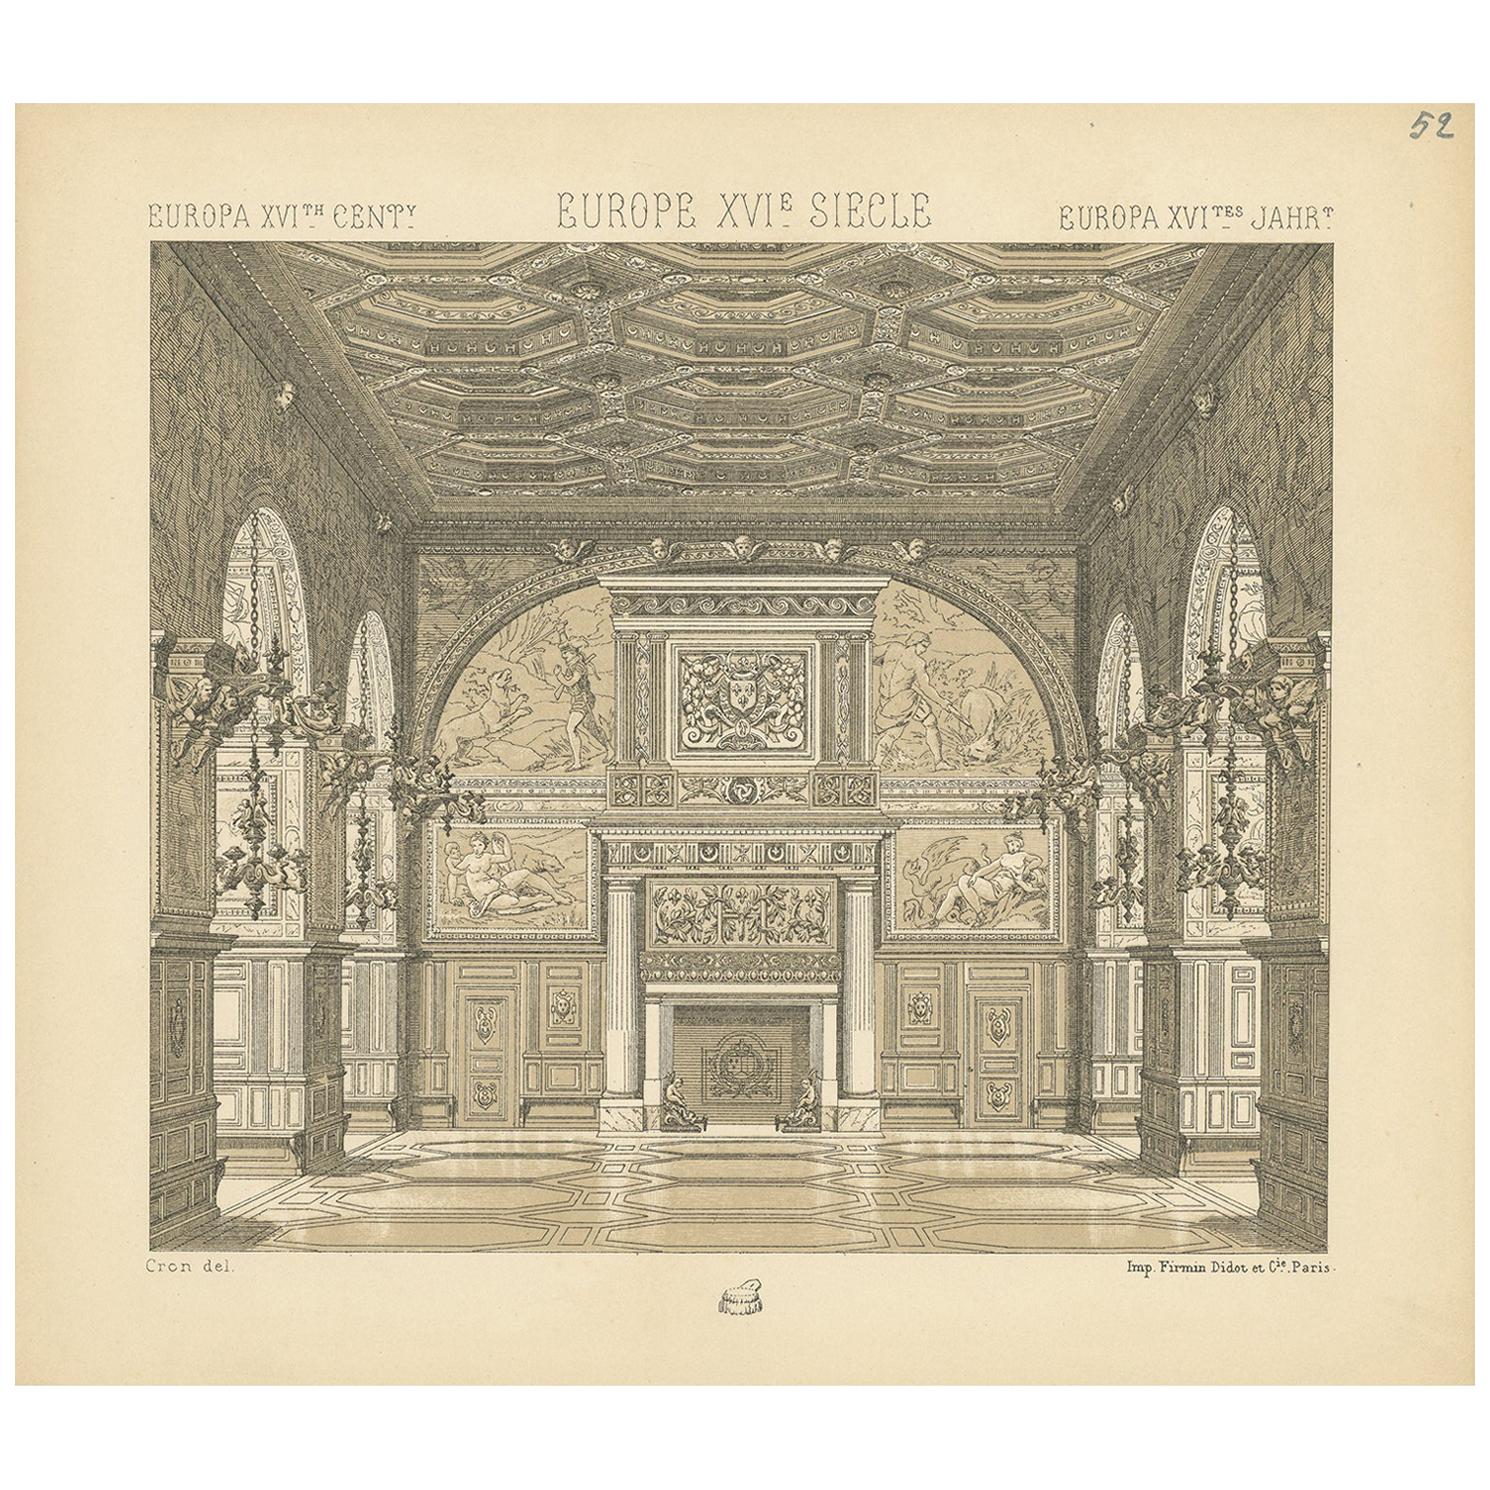 Pl. 52 Antique Print of European 16th Century Architecture, Racinet, circa 1880